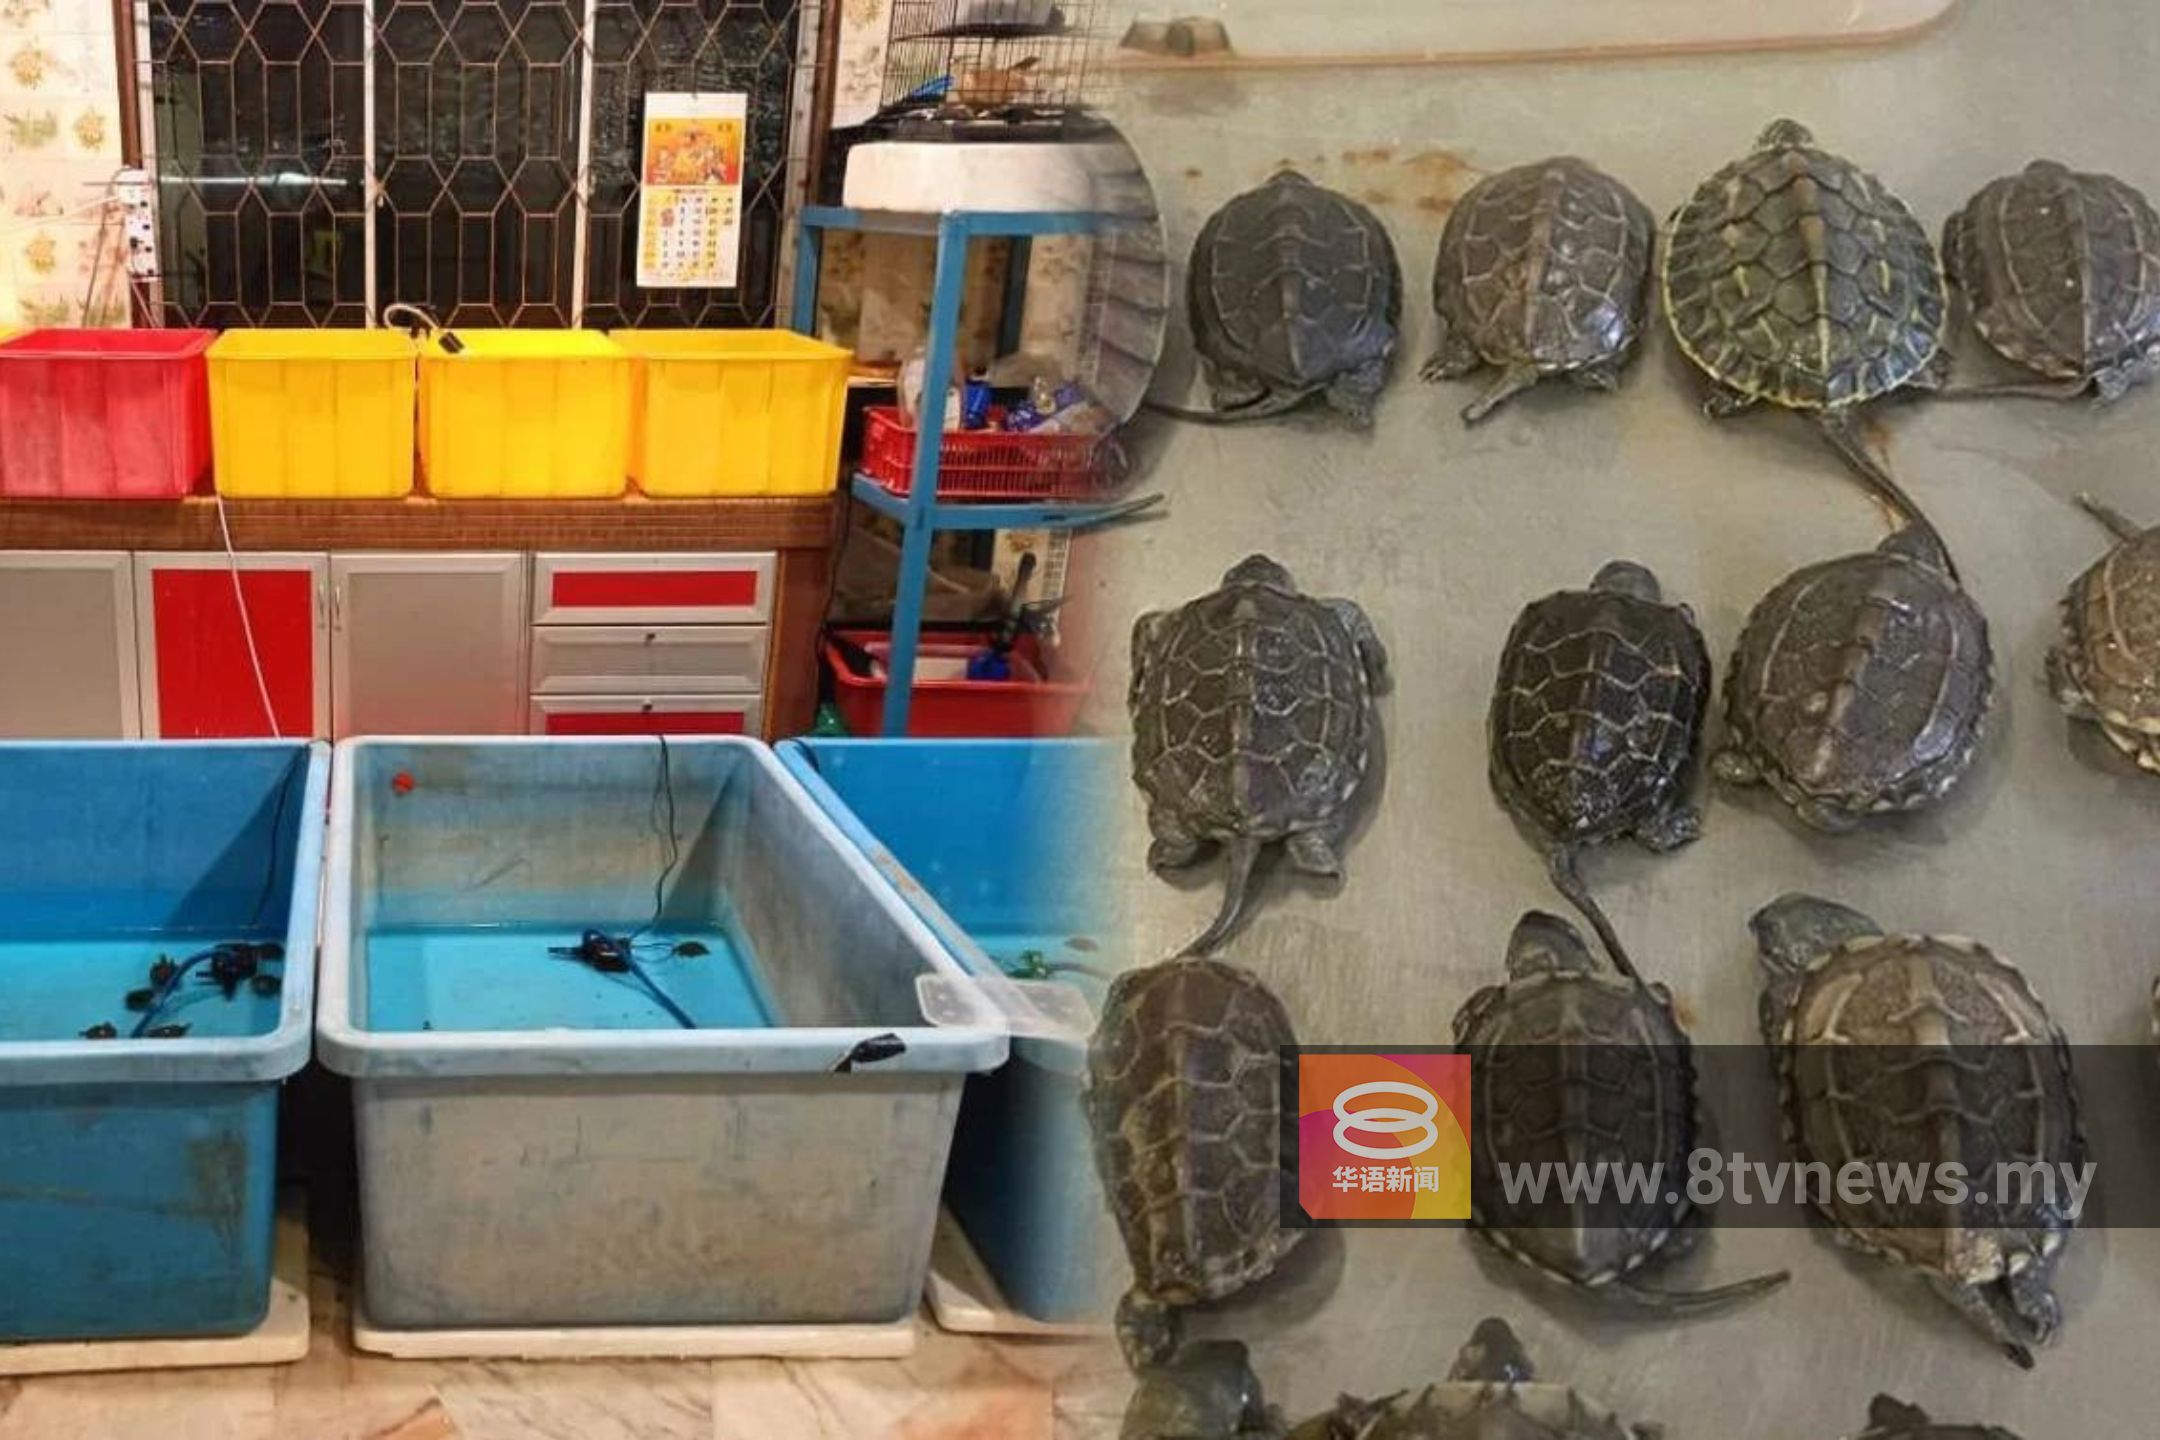 侦破最大宗乌龟走私案  警起获361只稀有乌龟